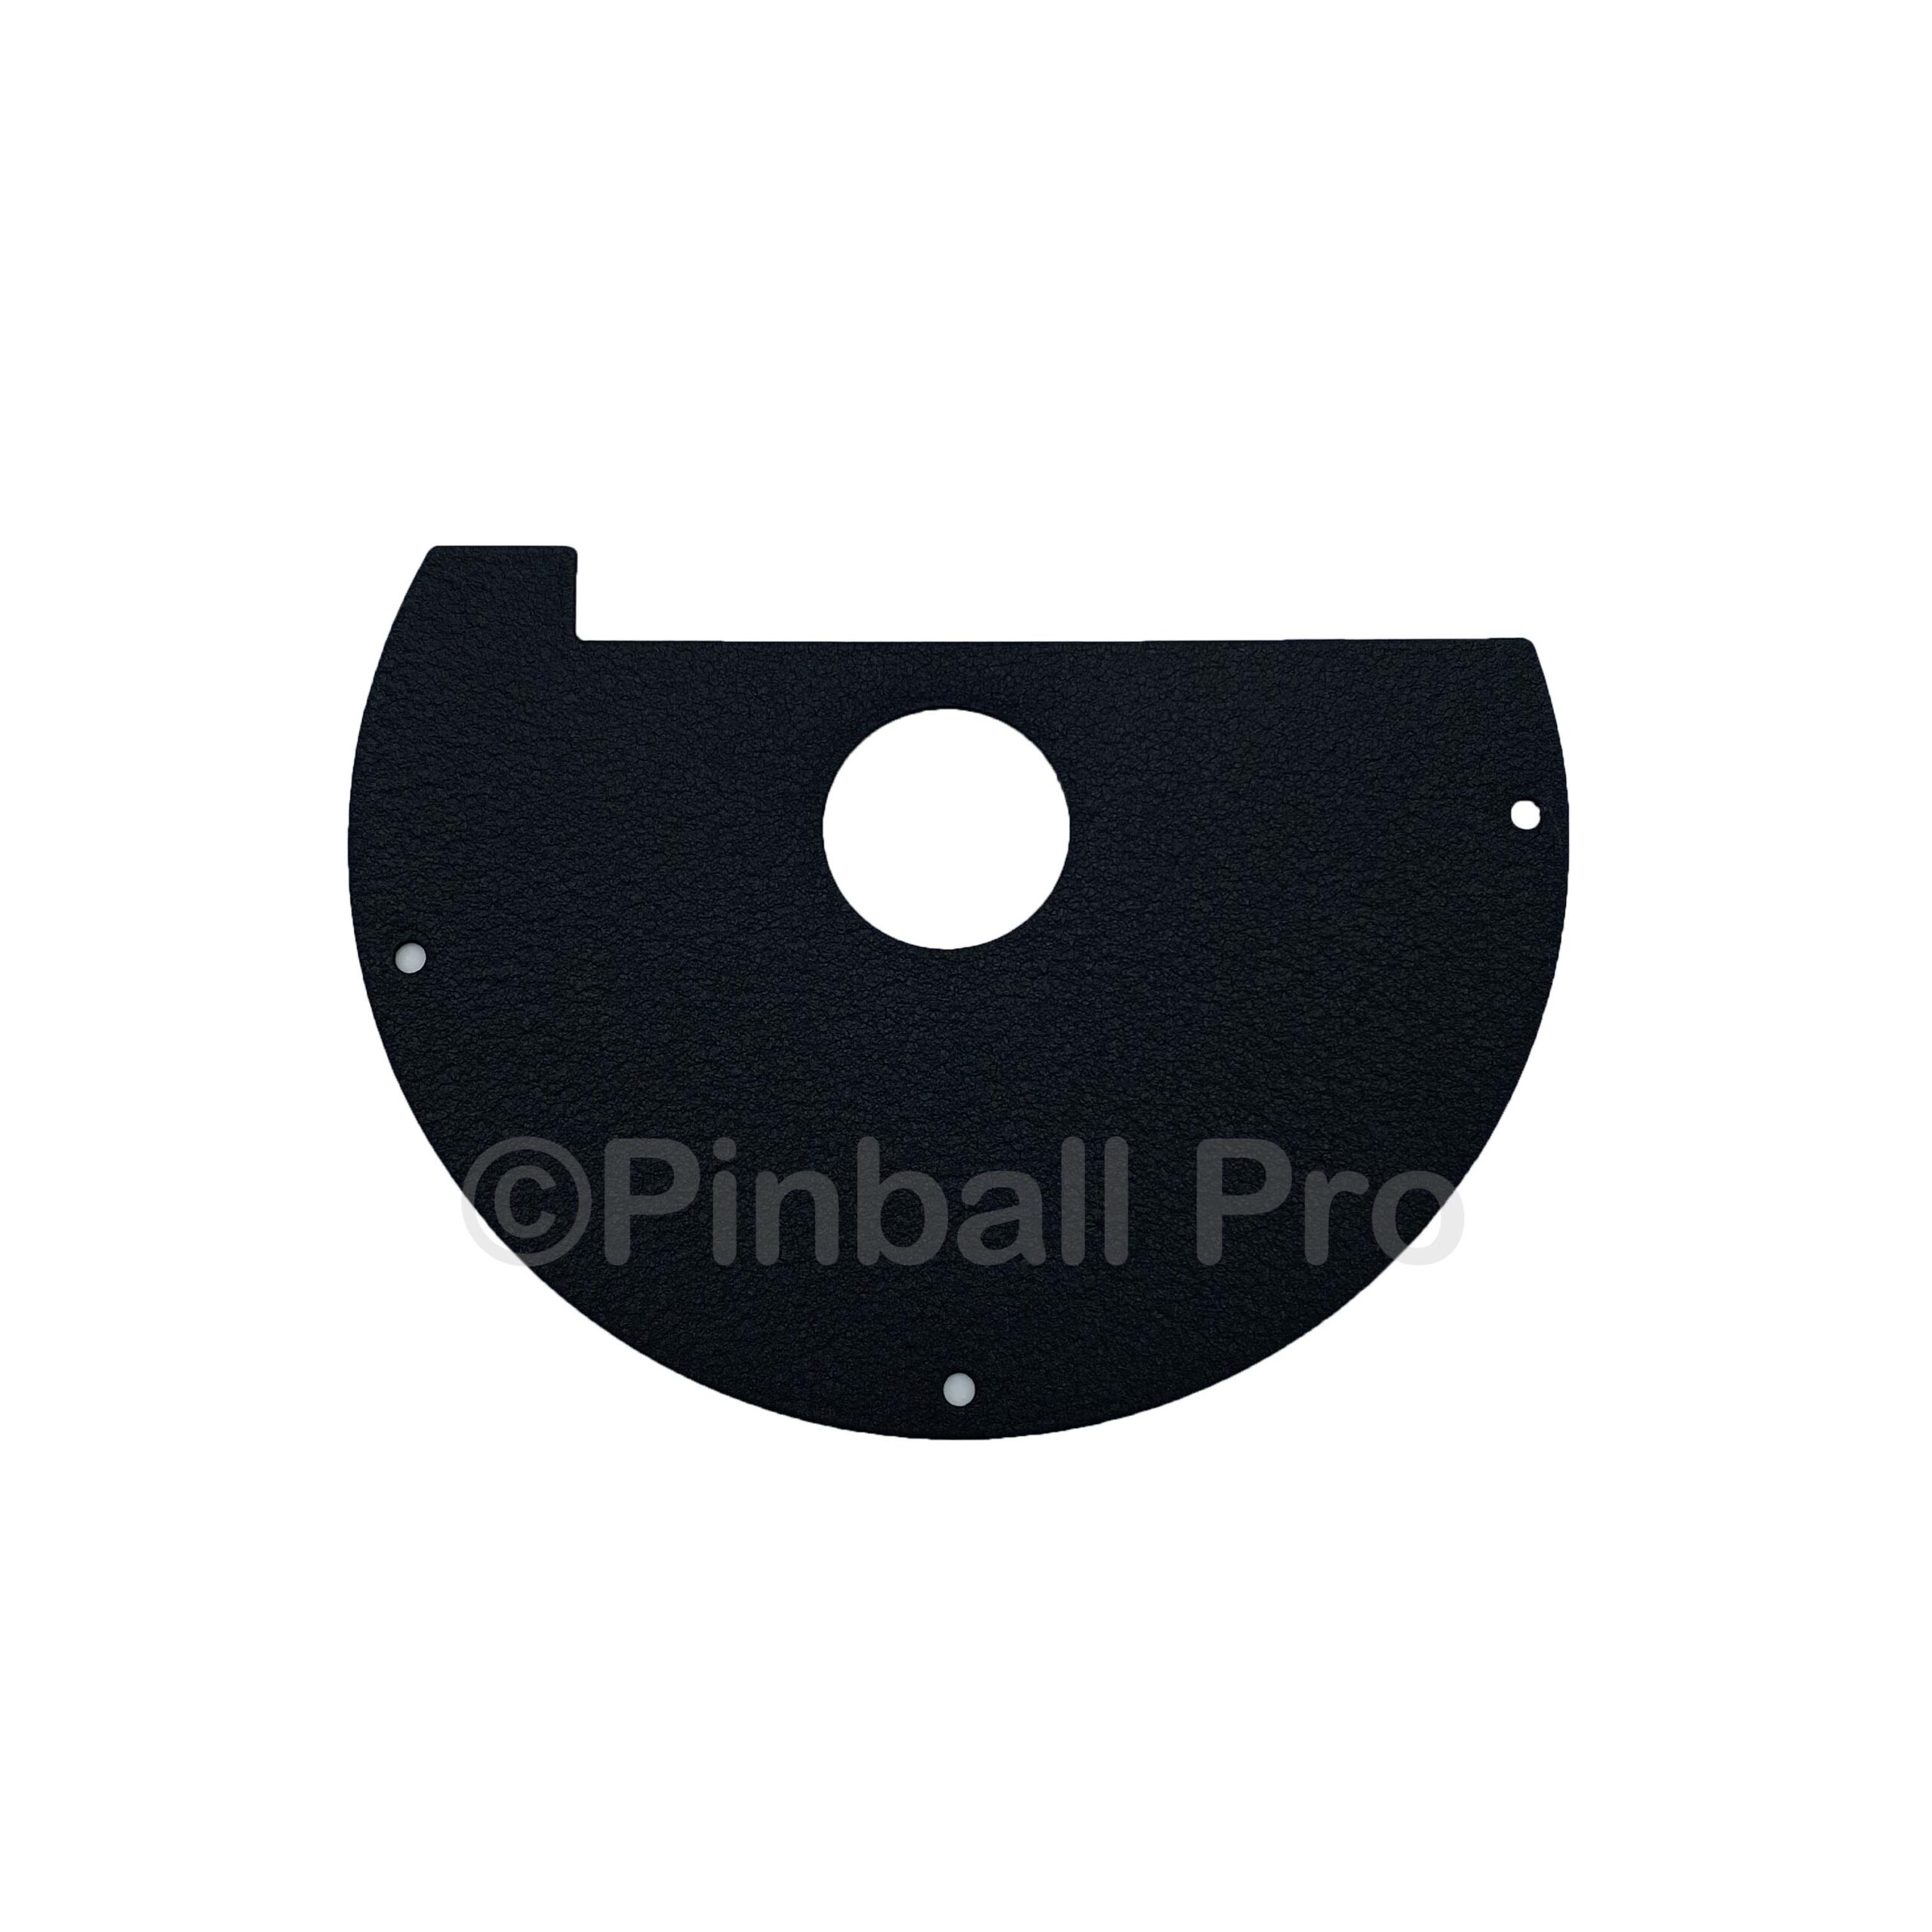 Stern Pinball Flipper Protectors Metal Half moon